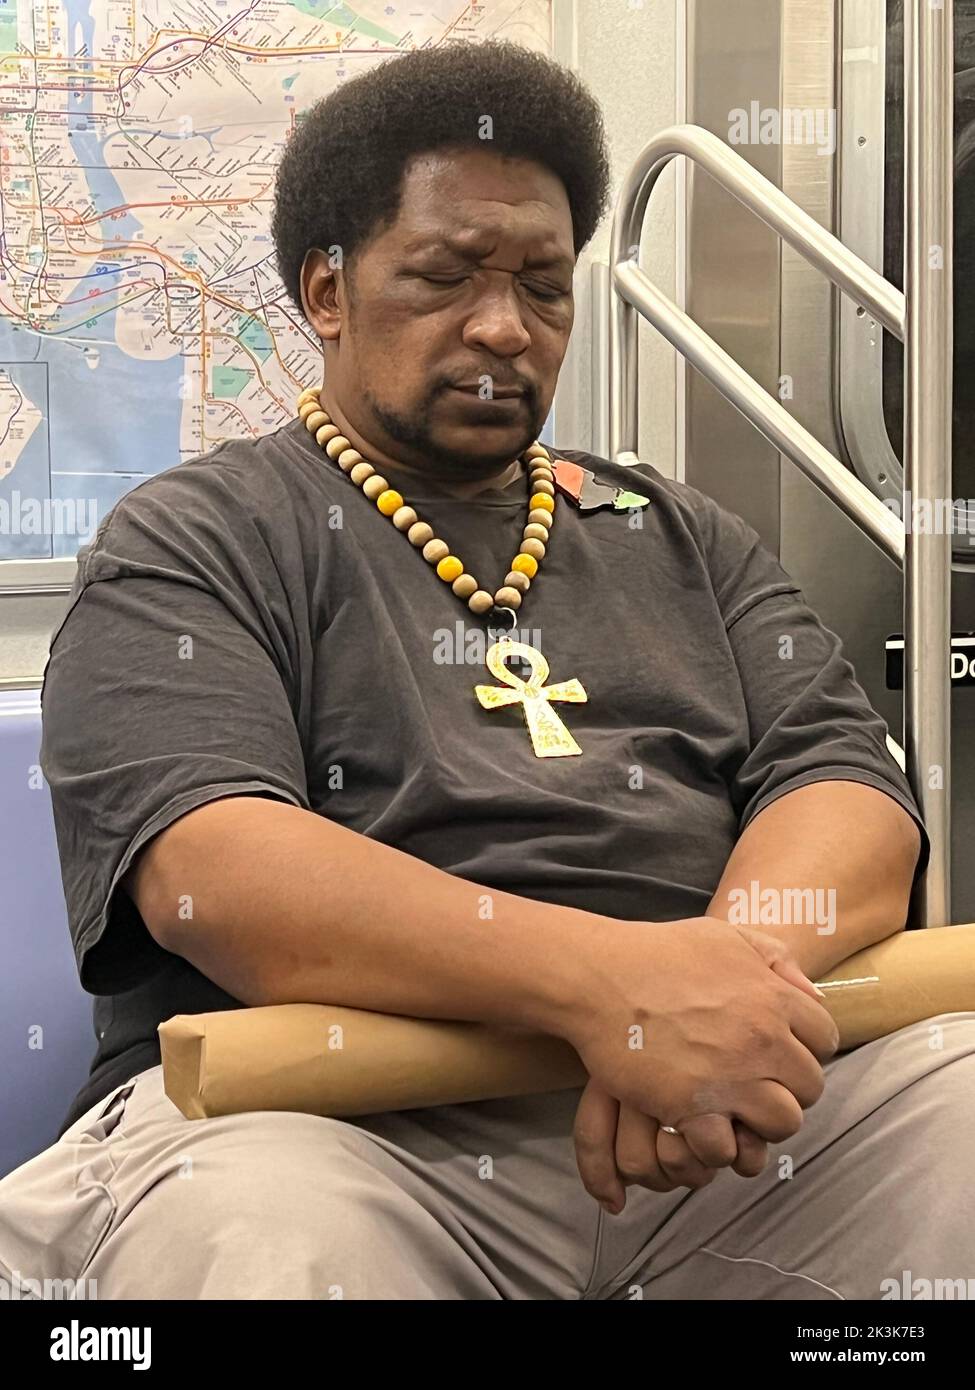 Homme portant un ankh (croix égyptienne) profondément dans la pensée sur un train de métro de New York. Banque D'Images